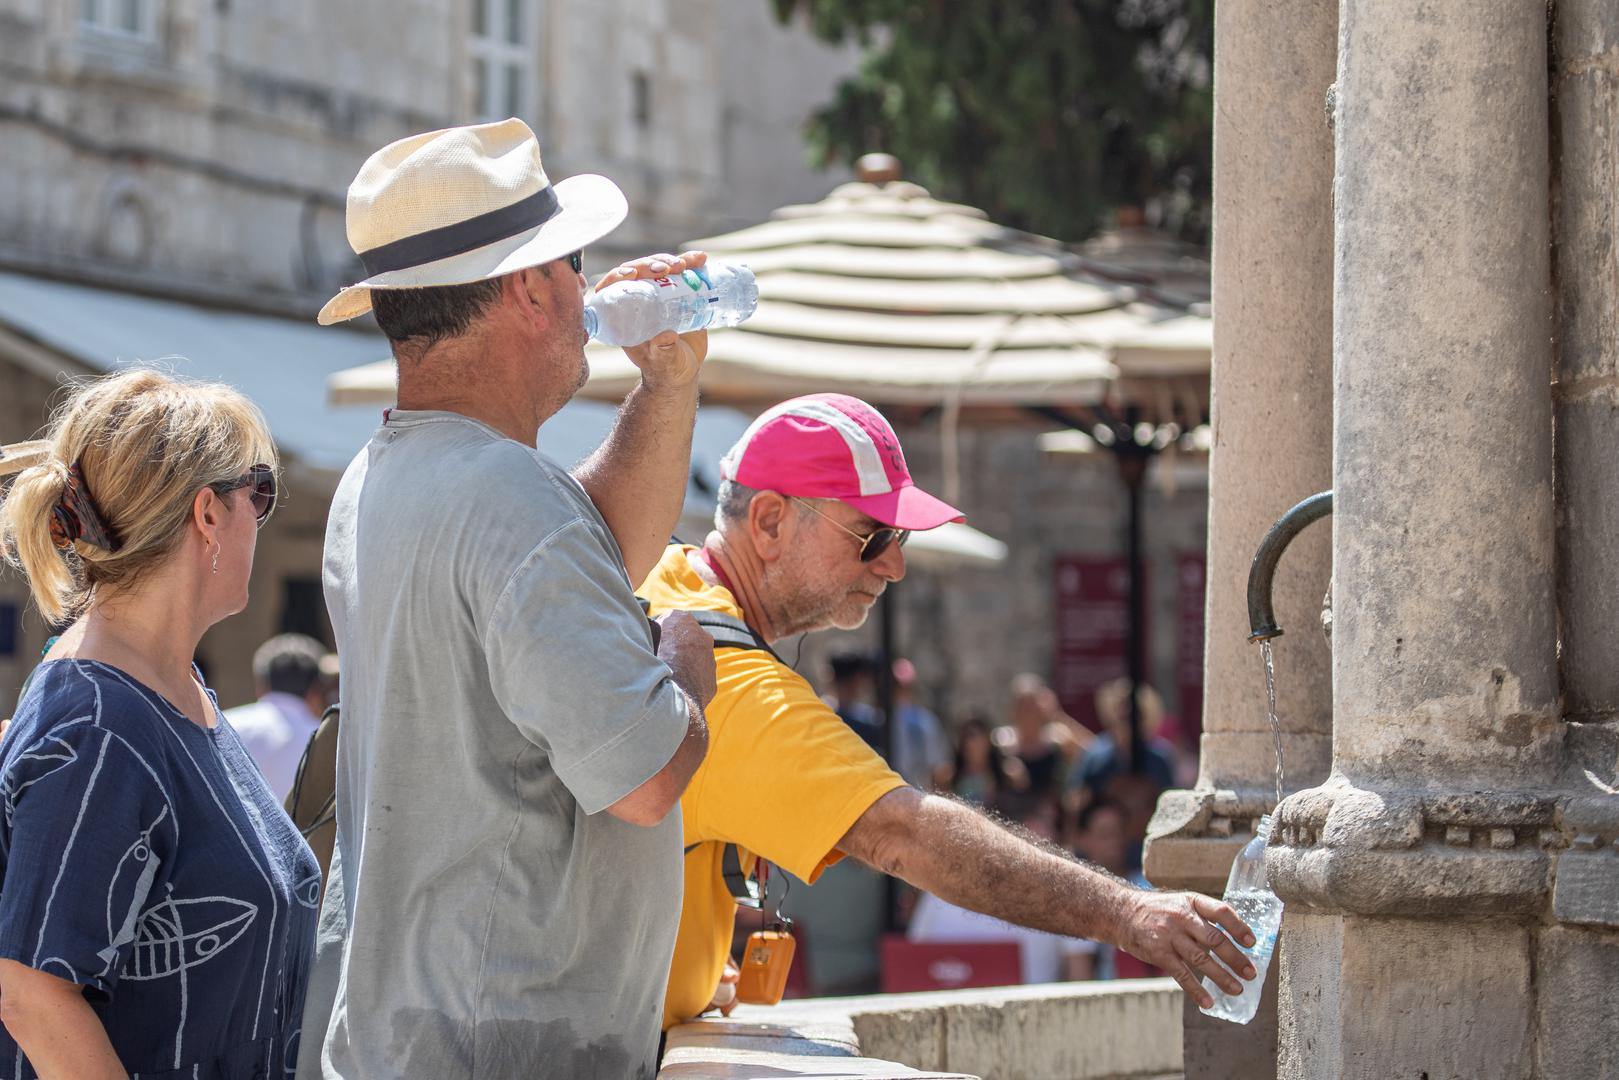 18.08.2023.,Stara gradska jezgra, Dubrovnik - Visoke temperature na jugu! Voda na fontanama i mjesta u hladu najtrazenija u gradu. Photo: Grgo Jelavic/PIXSELL